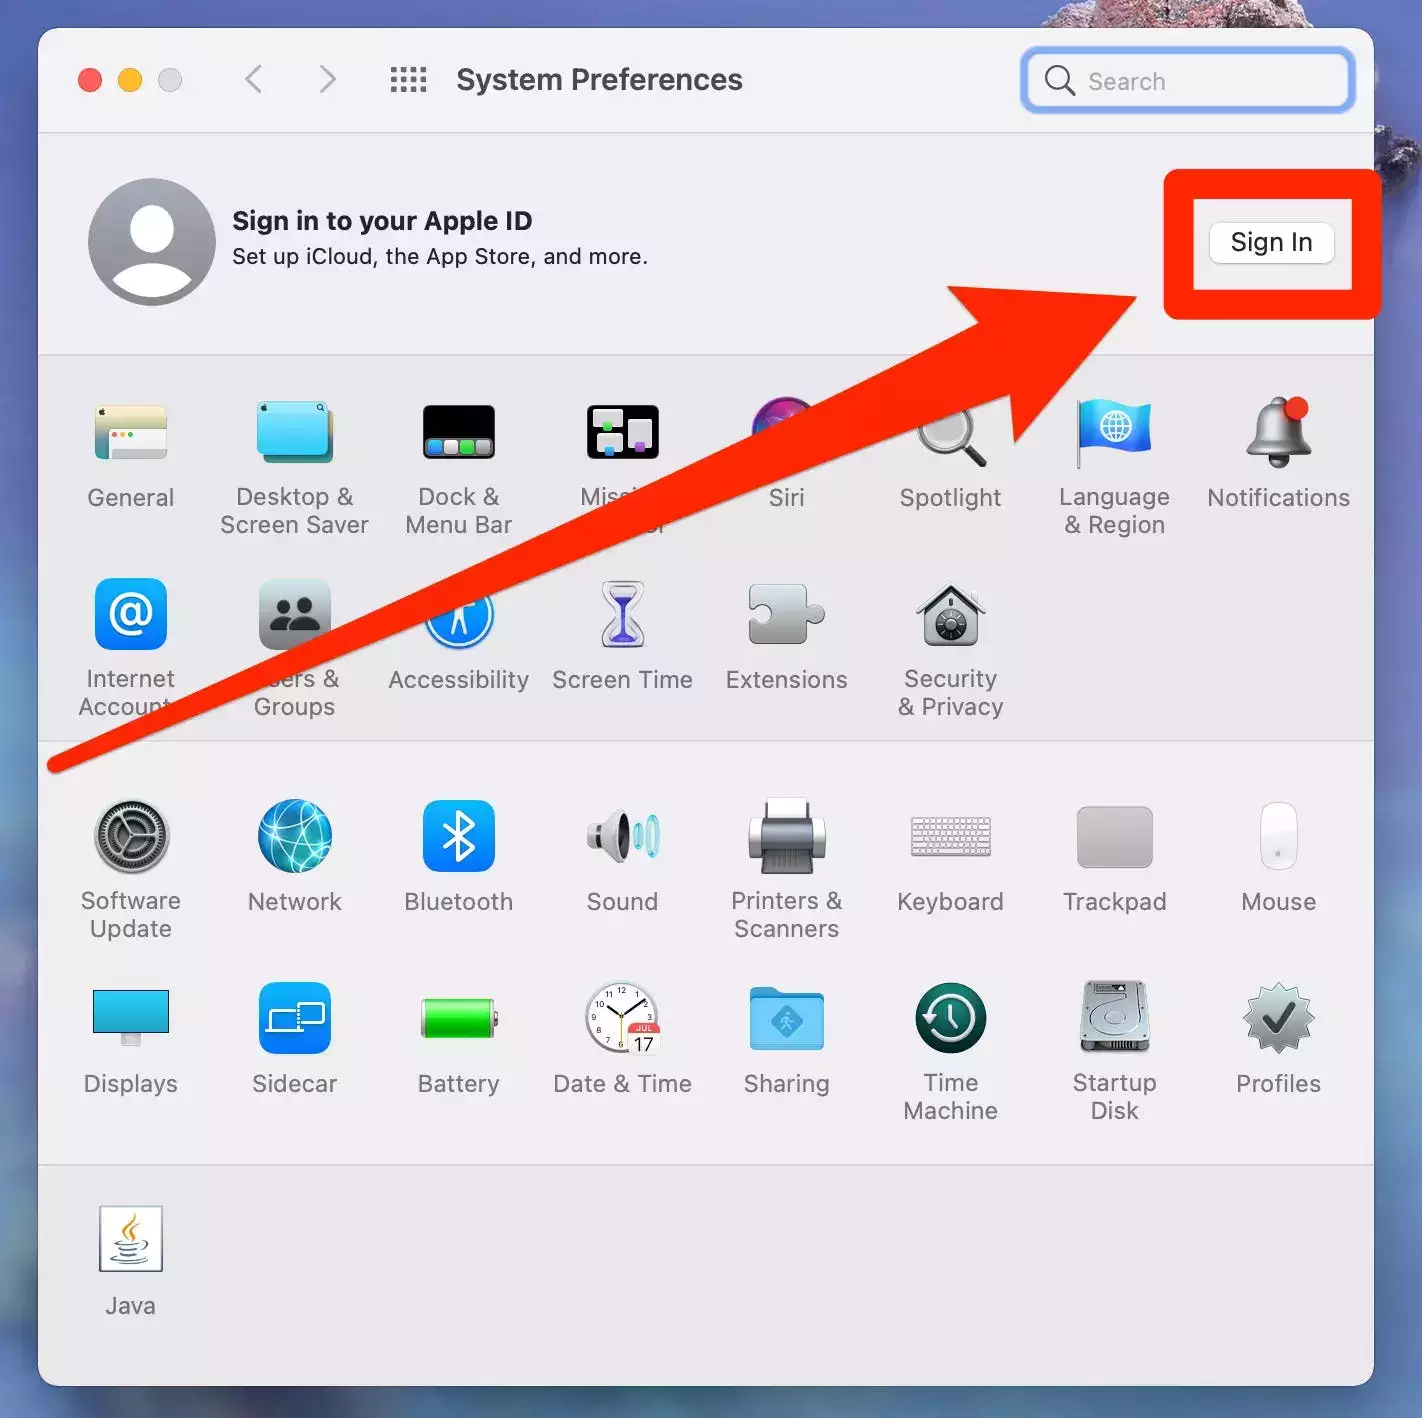 你可以在 Android 上获取 iMessage，但你需要一台 Mac 电脑——这是它的工作原理